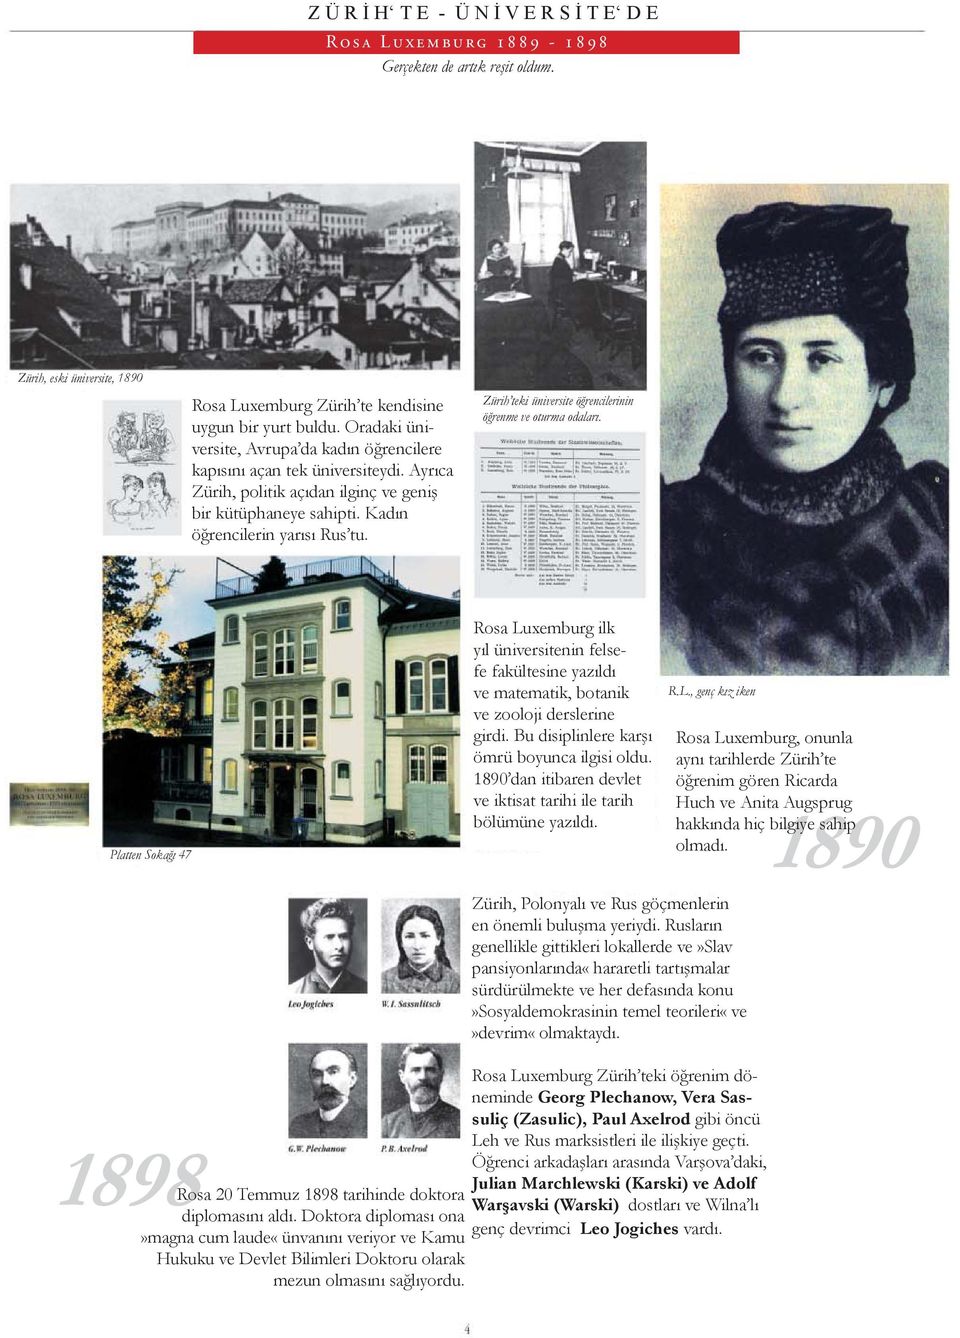 Zürih teki üniversite öğrencilerinin öğrenme ve oturma odaları. Platten Sokağı 47 Rosa Luxemburg ilk yıl üniversitenin felsefe fakültesine yazıldı ve matematik, botanik ve zooloji derslerine girdi.